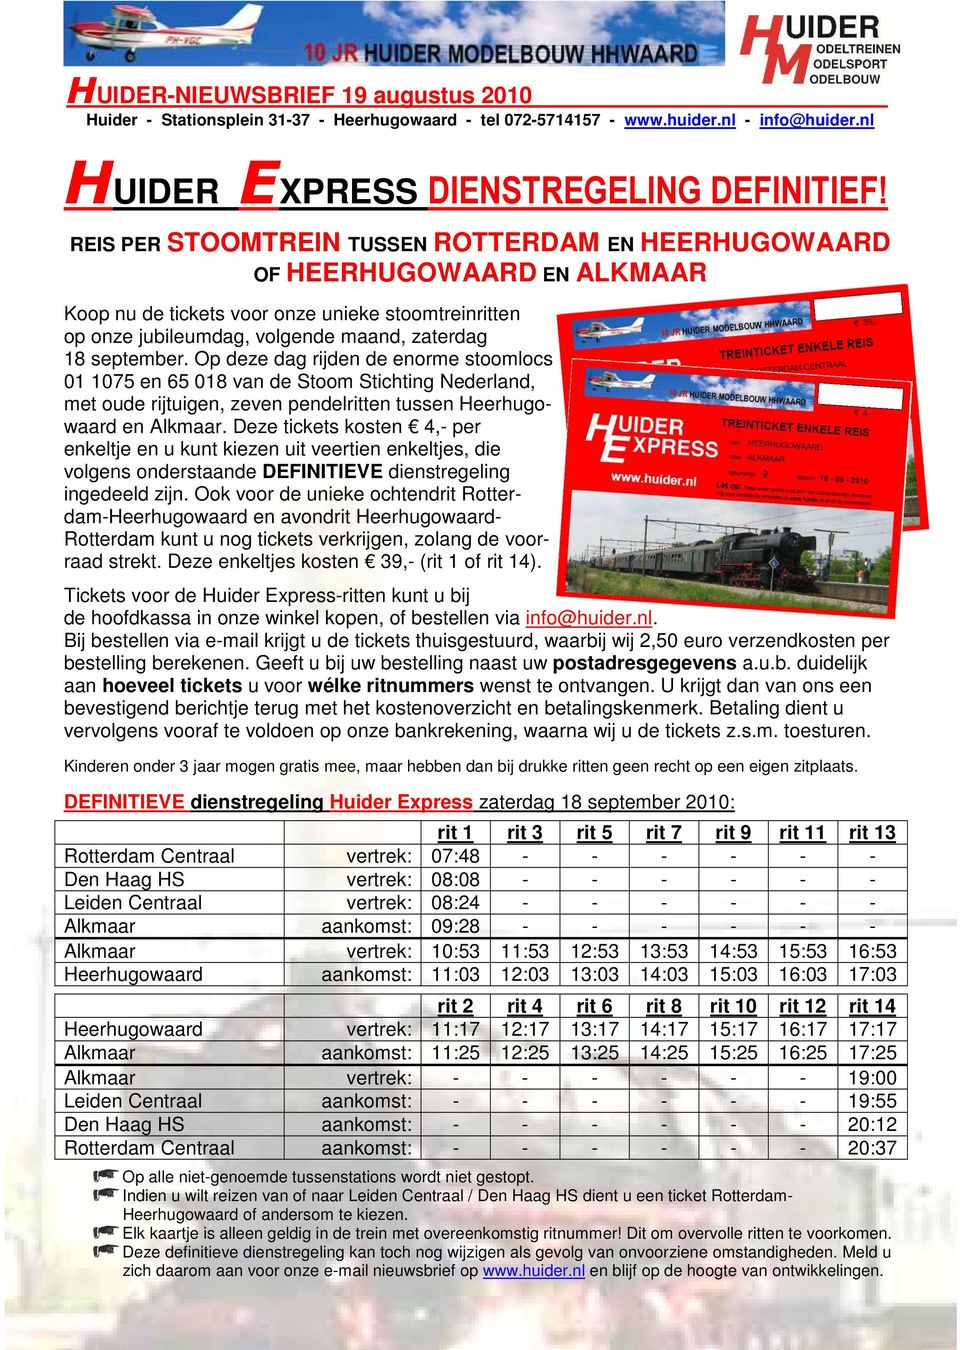 Op deze dag rijden de enorme stoomlocs 01 1075 en 65 018 van de Stoom Stichting Nederland, met oude rijtuigen, zeven pendelritten tussen Heerhugowaard en Alkmaar.